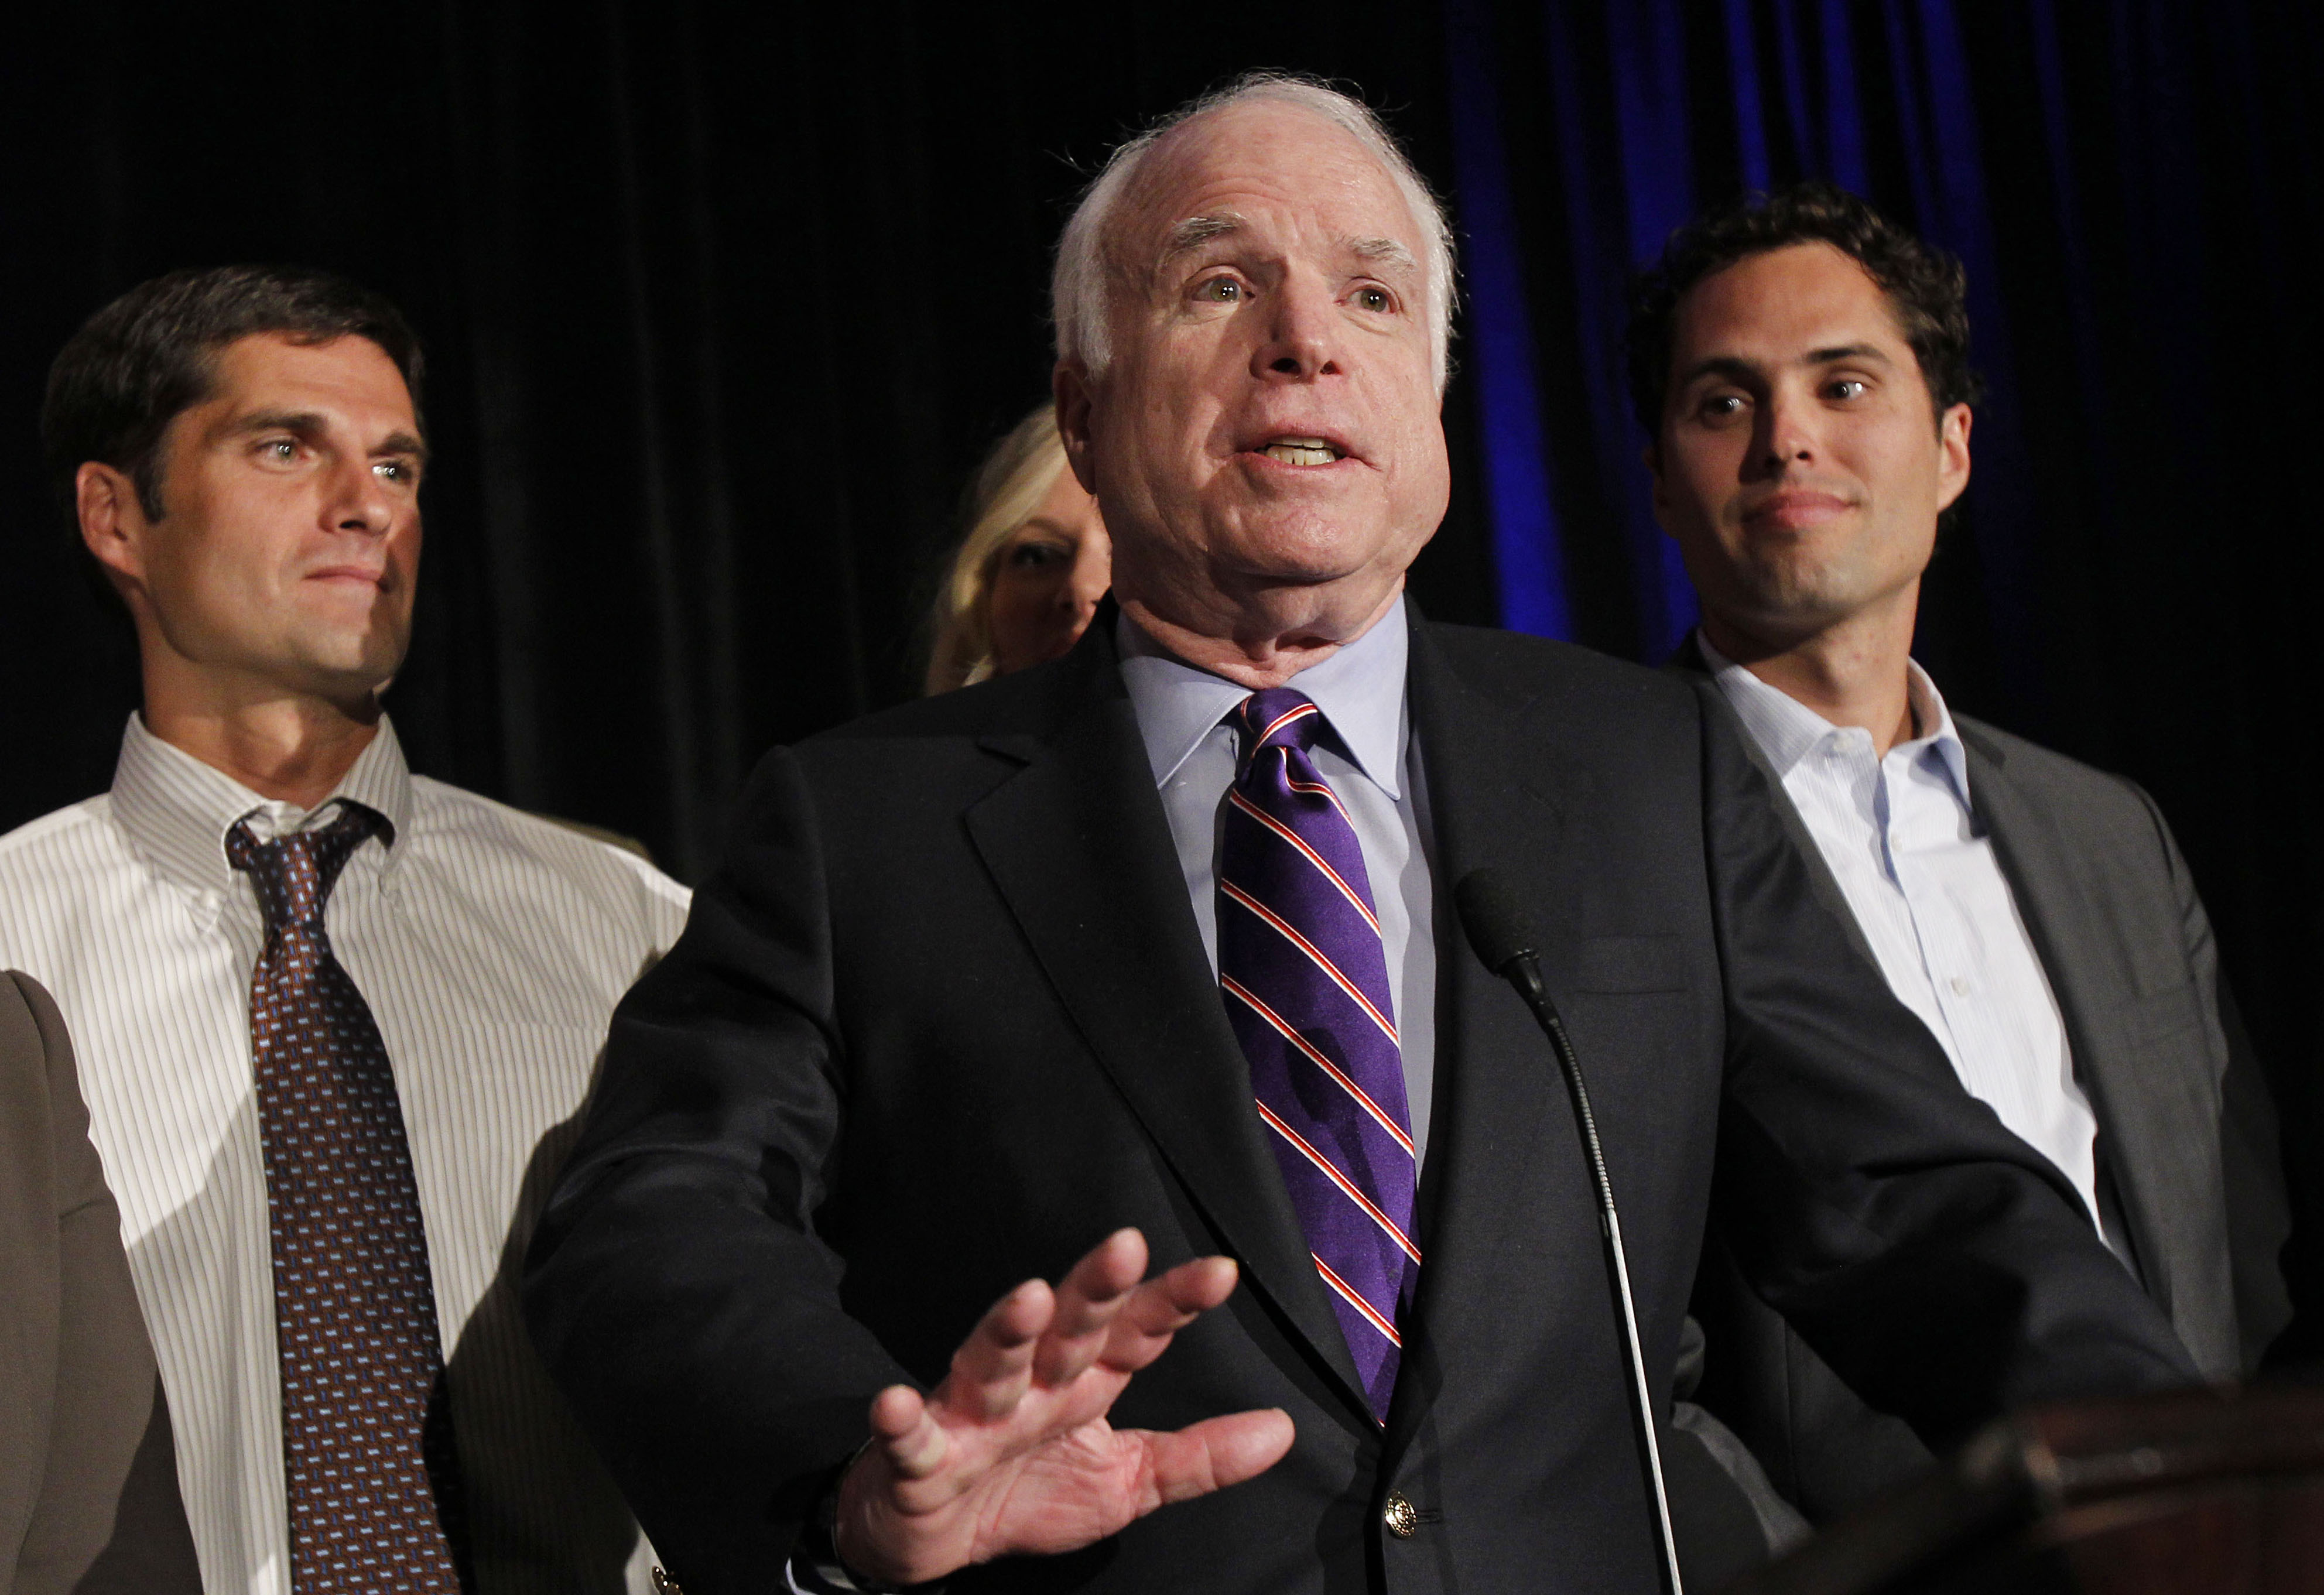 Förre presidentkandidaten John McCain dök upp och visade sitt stöd för Romney.